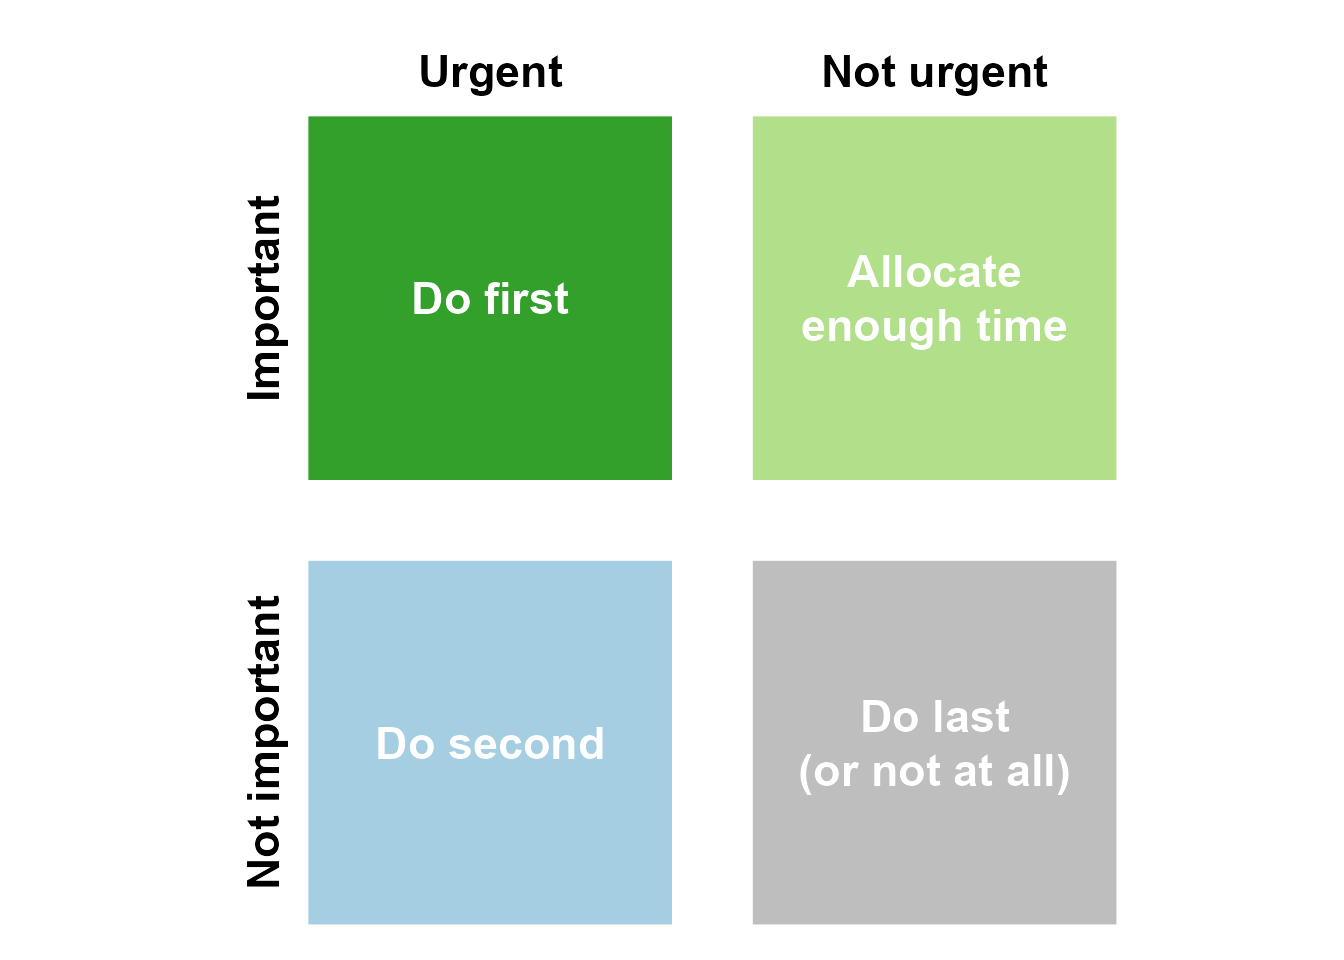 Variation on the Eisenhower matrix for prioritizing tasks.